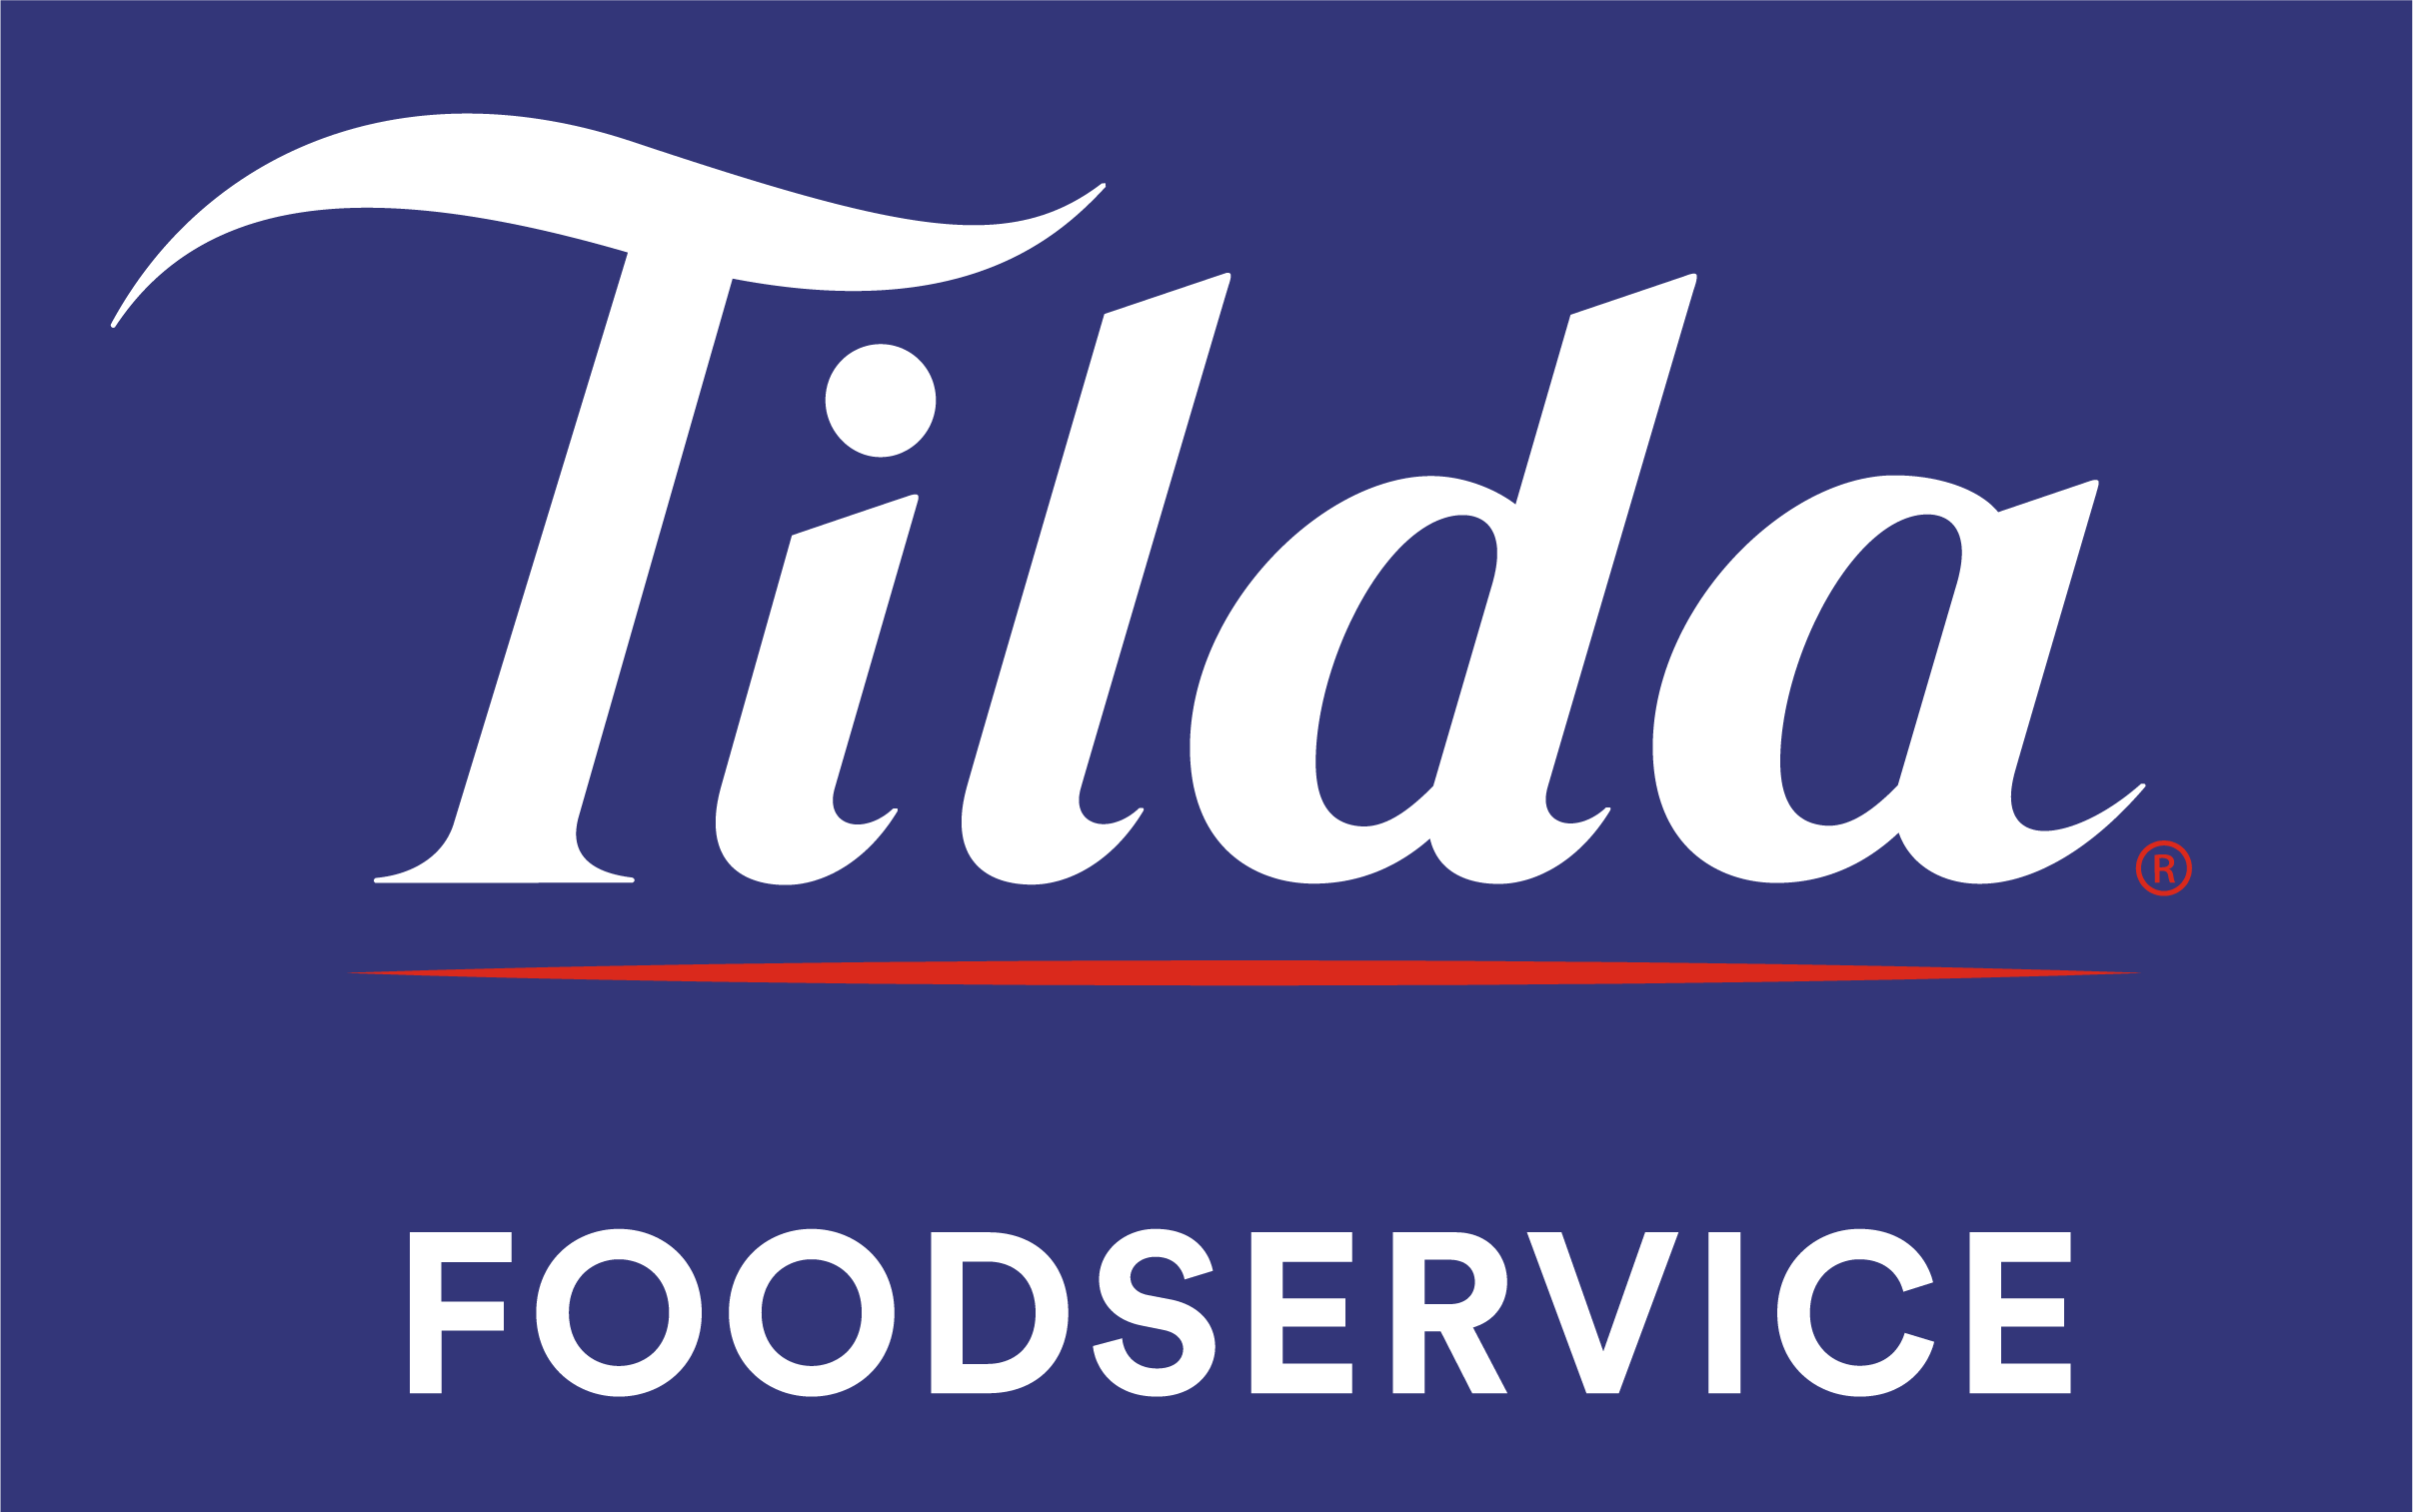 TildaFoodservice-LogoWhite-RedSwoosh-BlueBgd-RGB